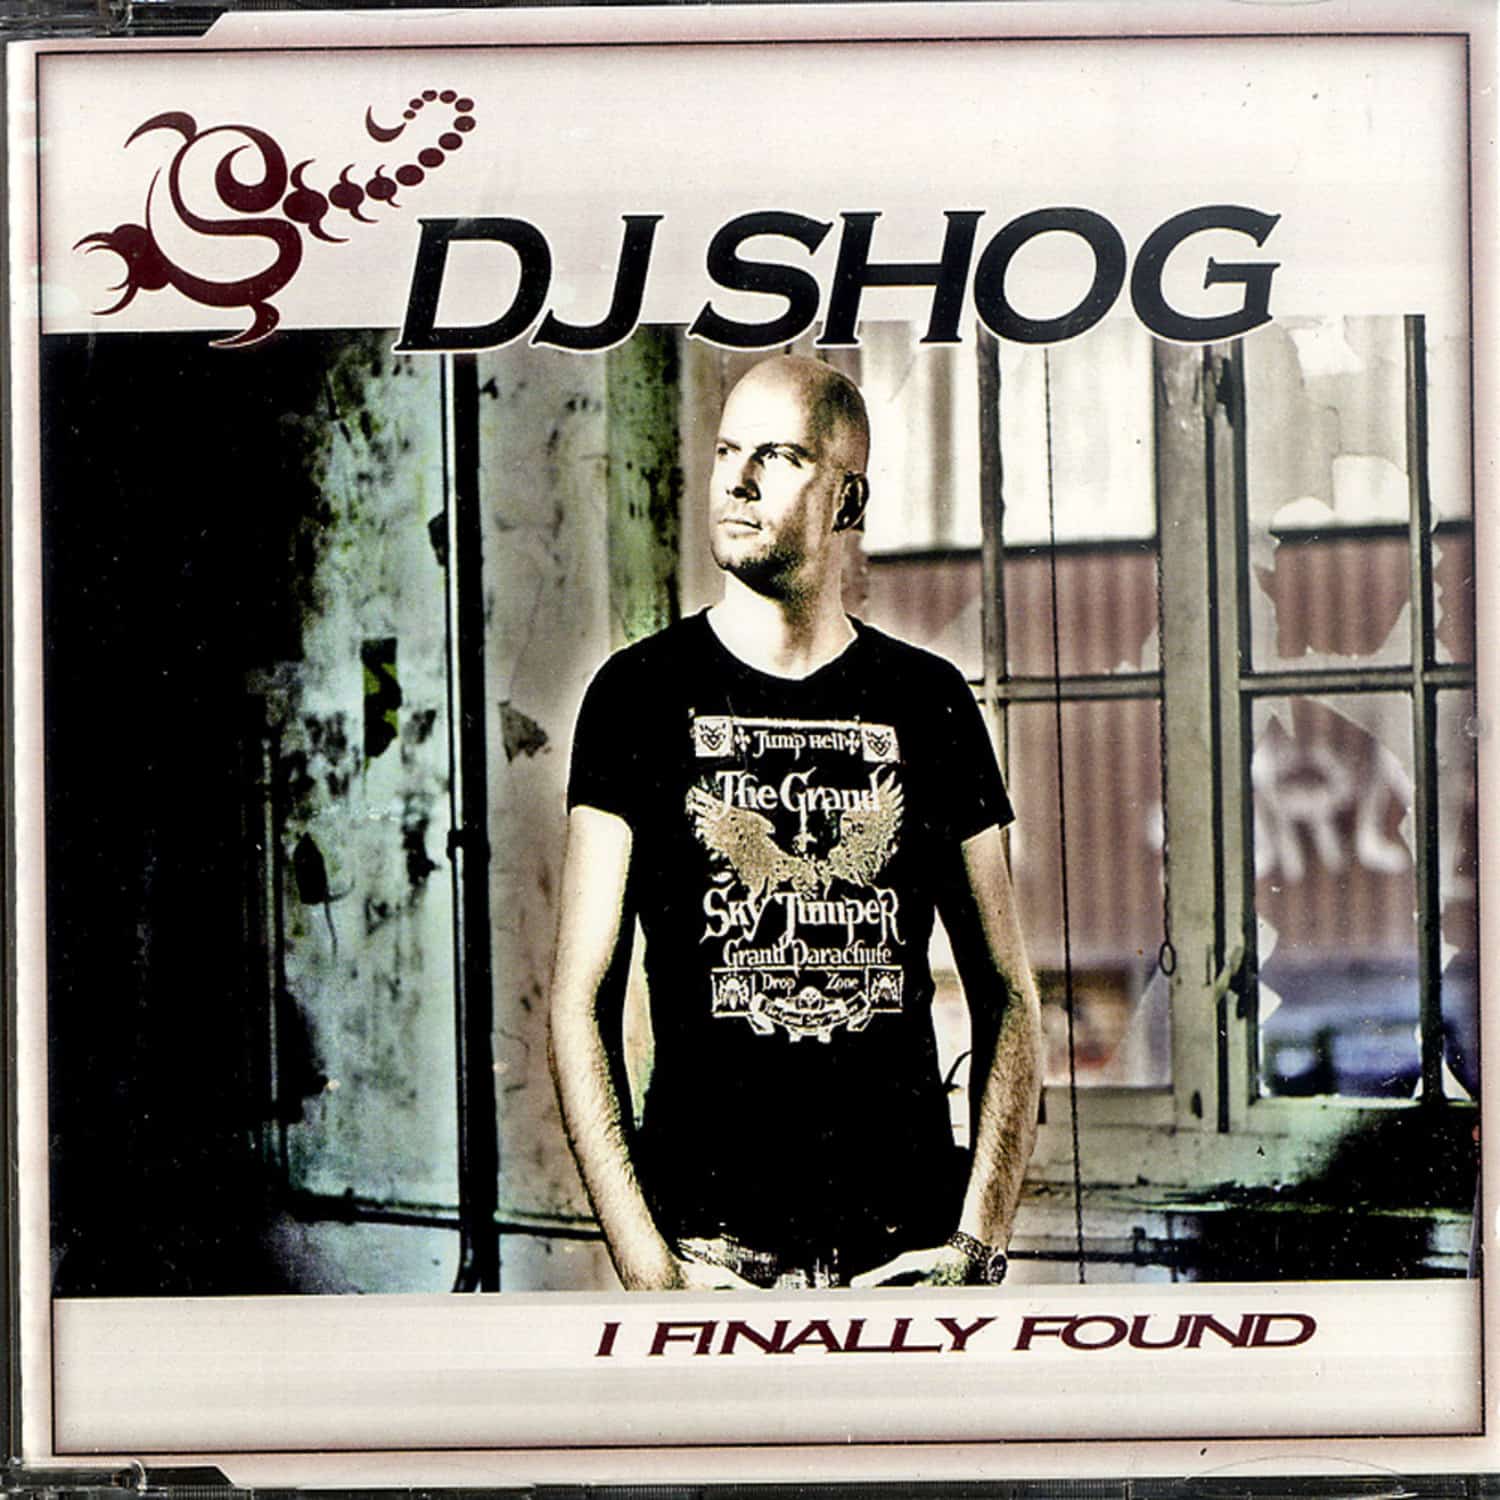 DJ Shog - I FINALLY FOUND 